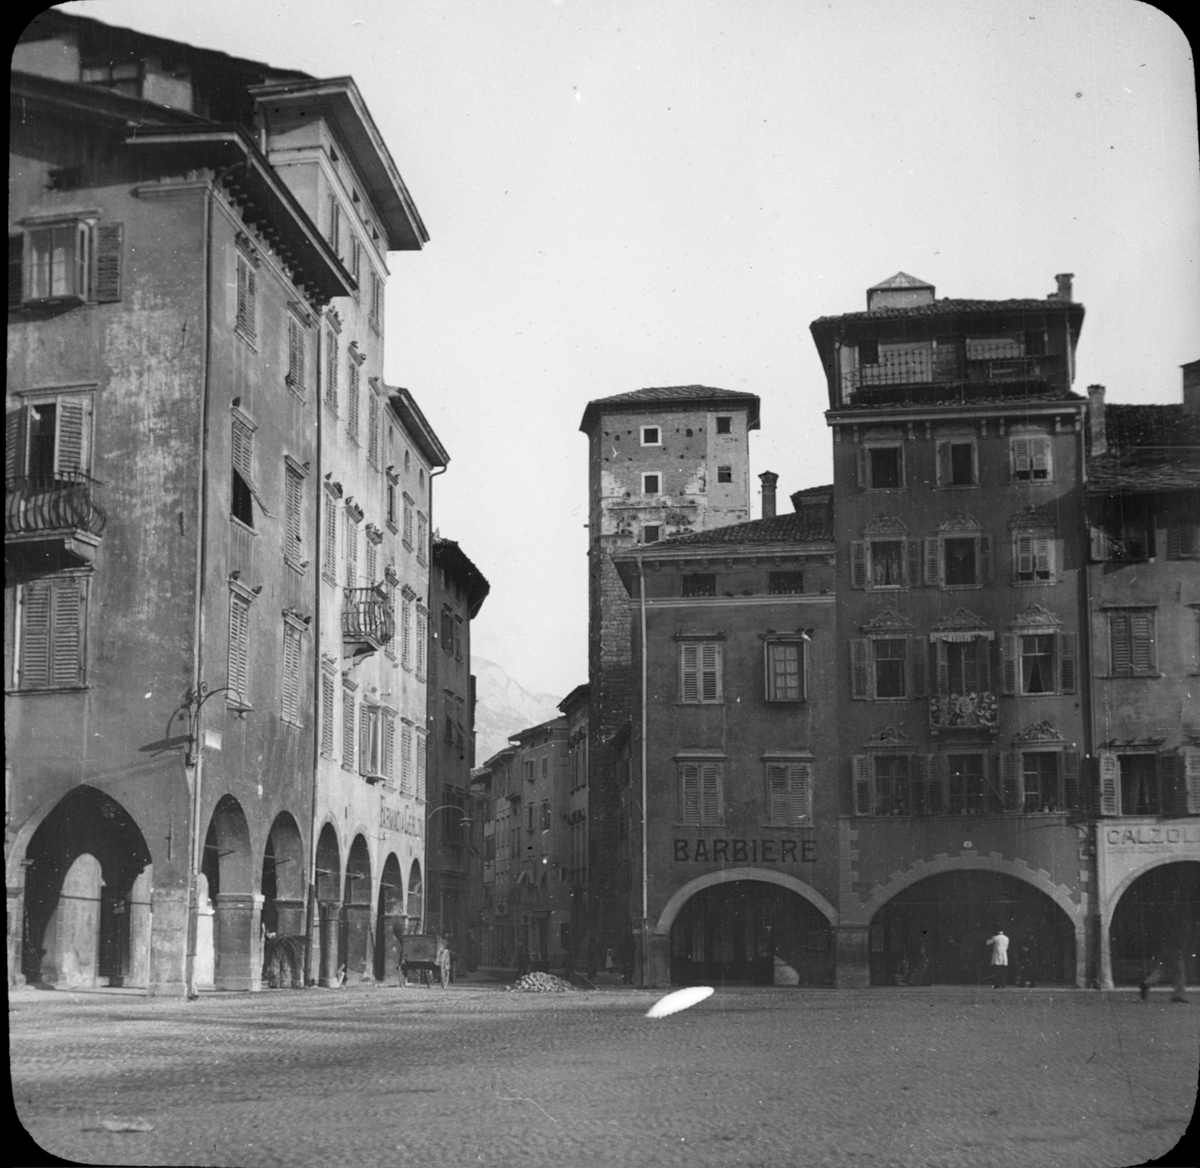 Skioptikonbild med motiv från Piazza del Duomo, Trento.
Bilden har förvarats i kartong märkt: Resan 1909. Trient 7. N:20. Text på bild: "Piazza del Doumo".